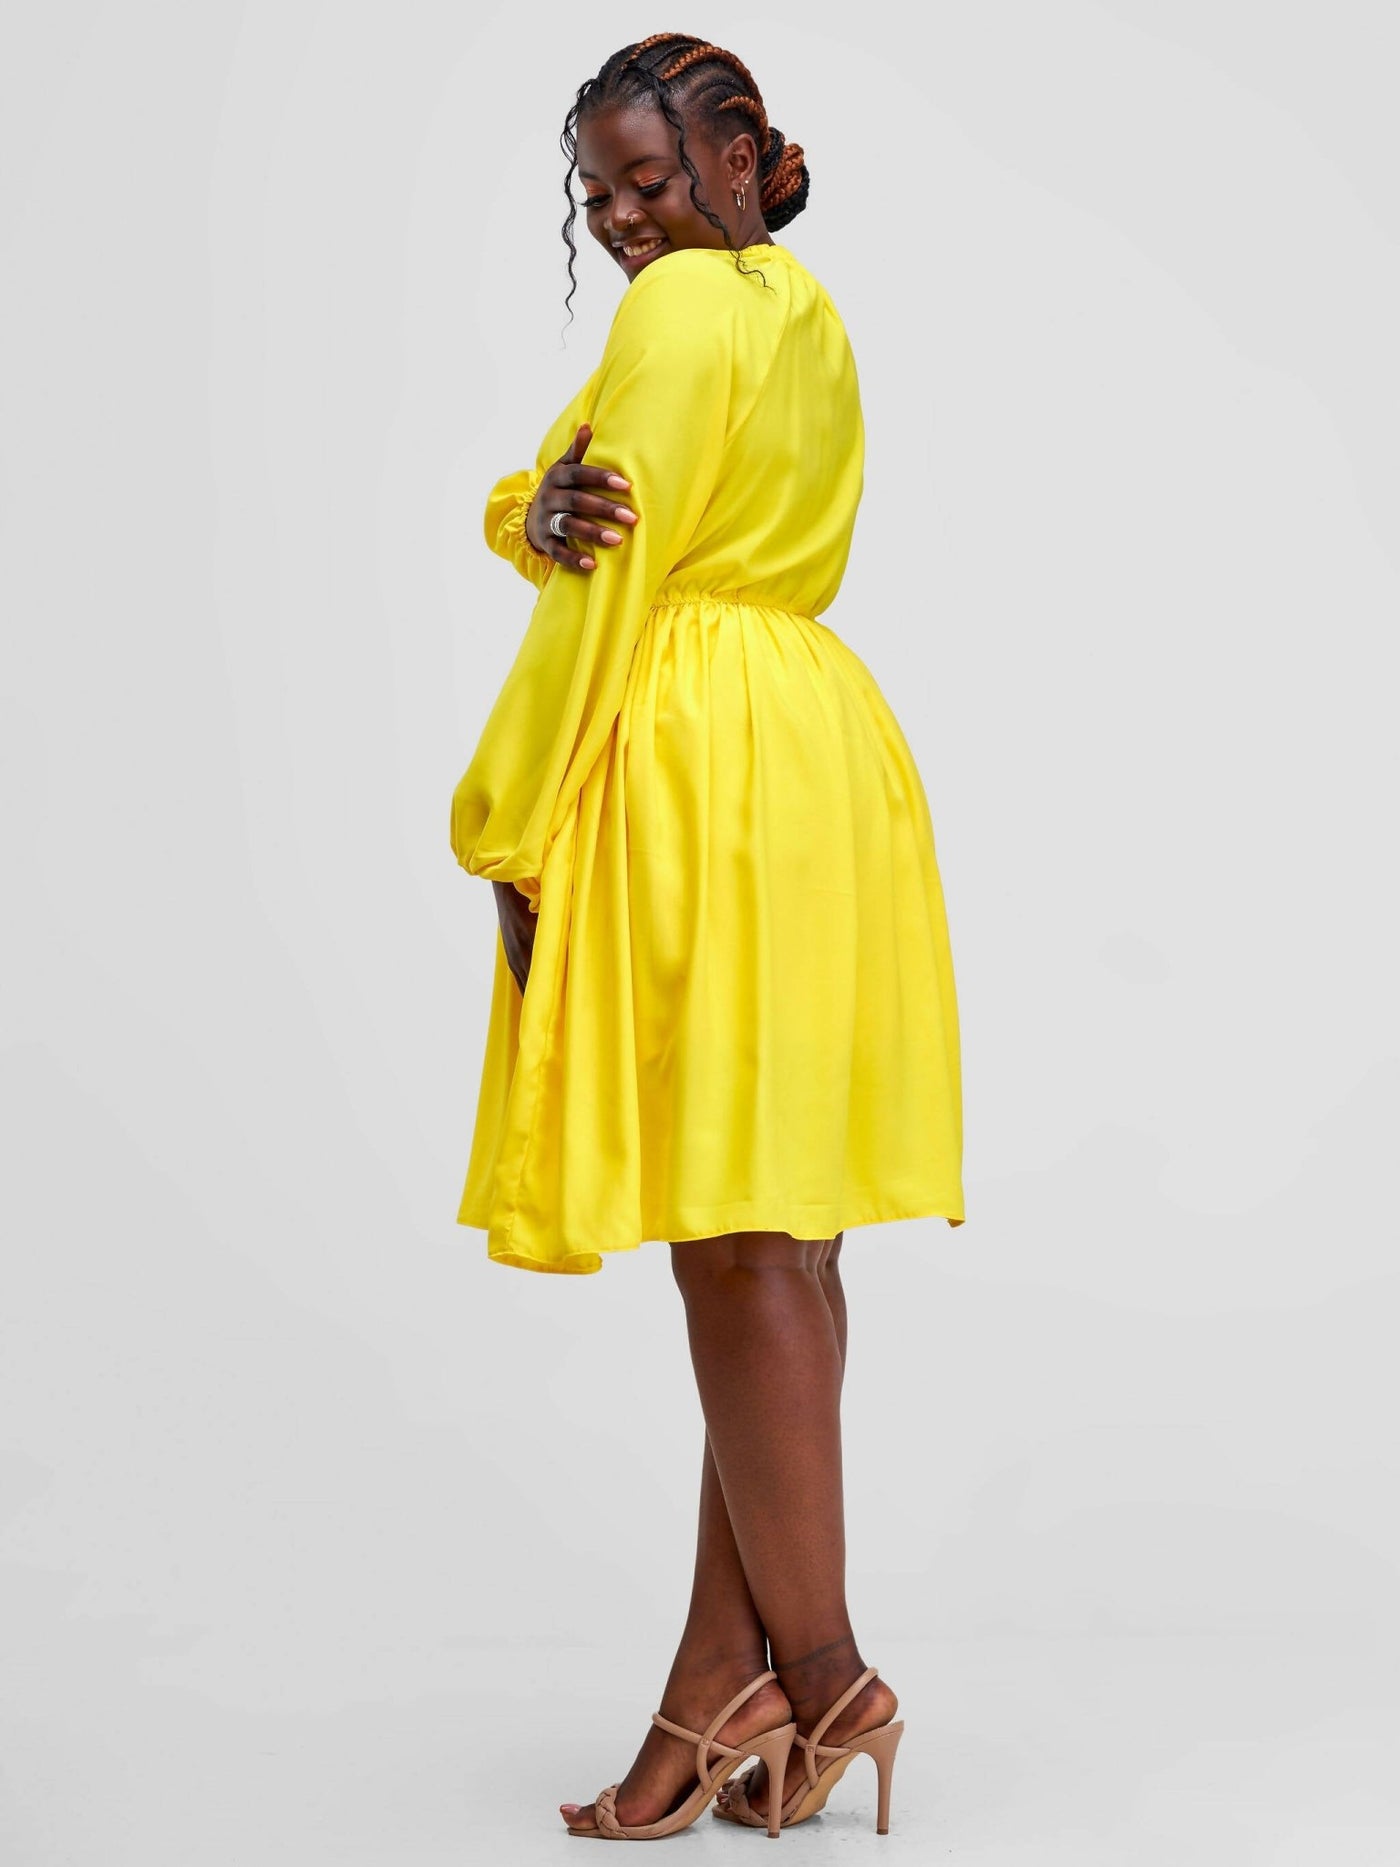 Lizola Coco Skater Dress - Yellow - Shopzetu